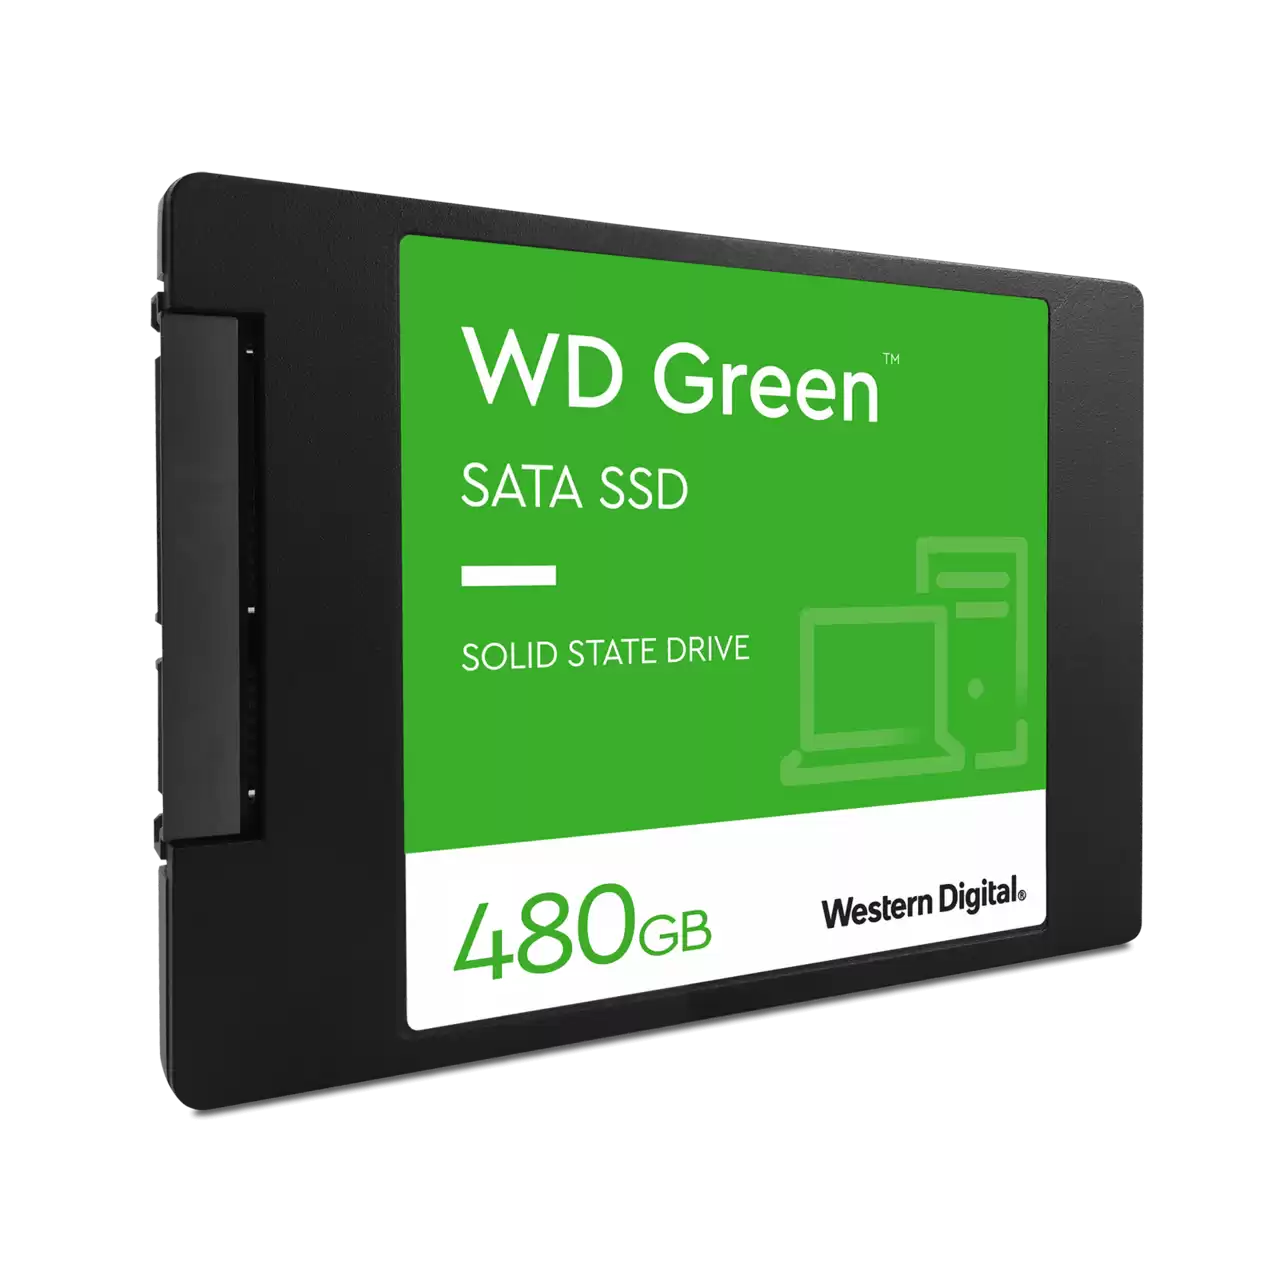 Western Digital 480GB WD Green SSD SATA III 6 Gb/s 2.5" Internal Hard Drive (Brand New)